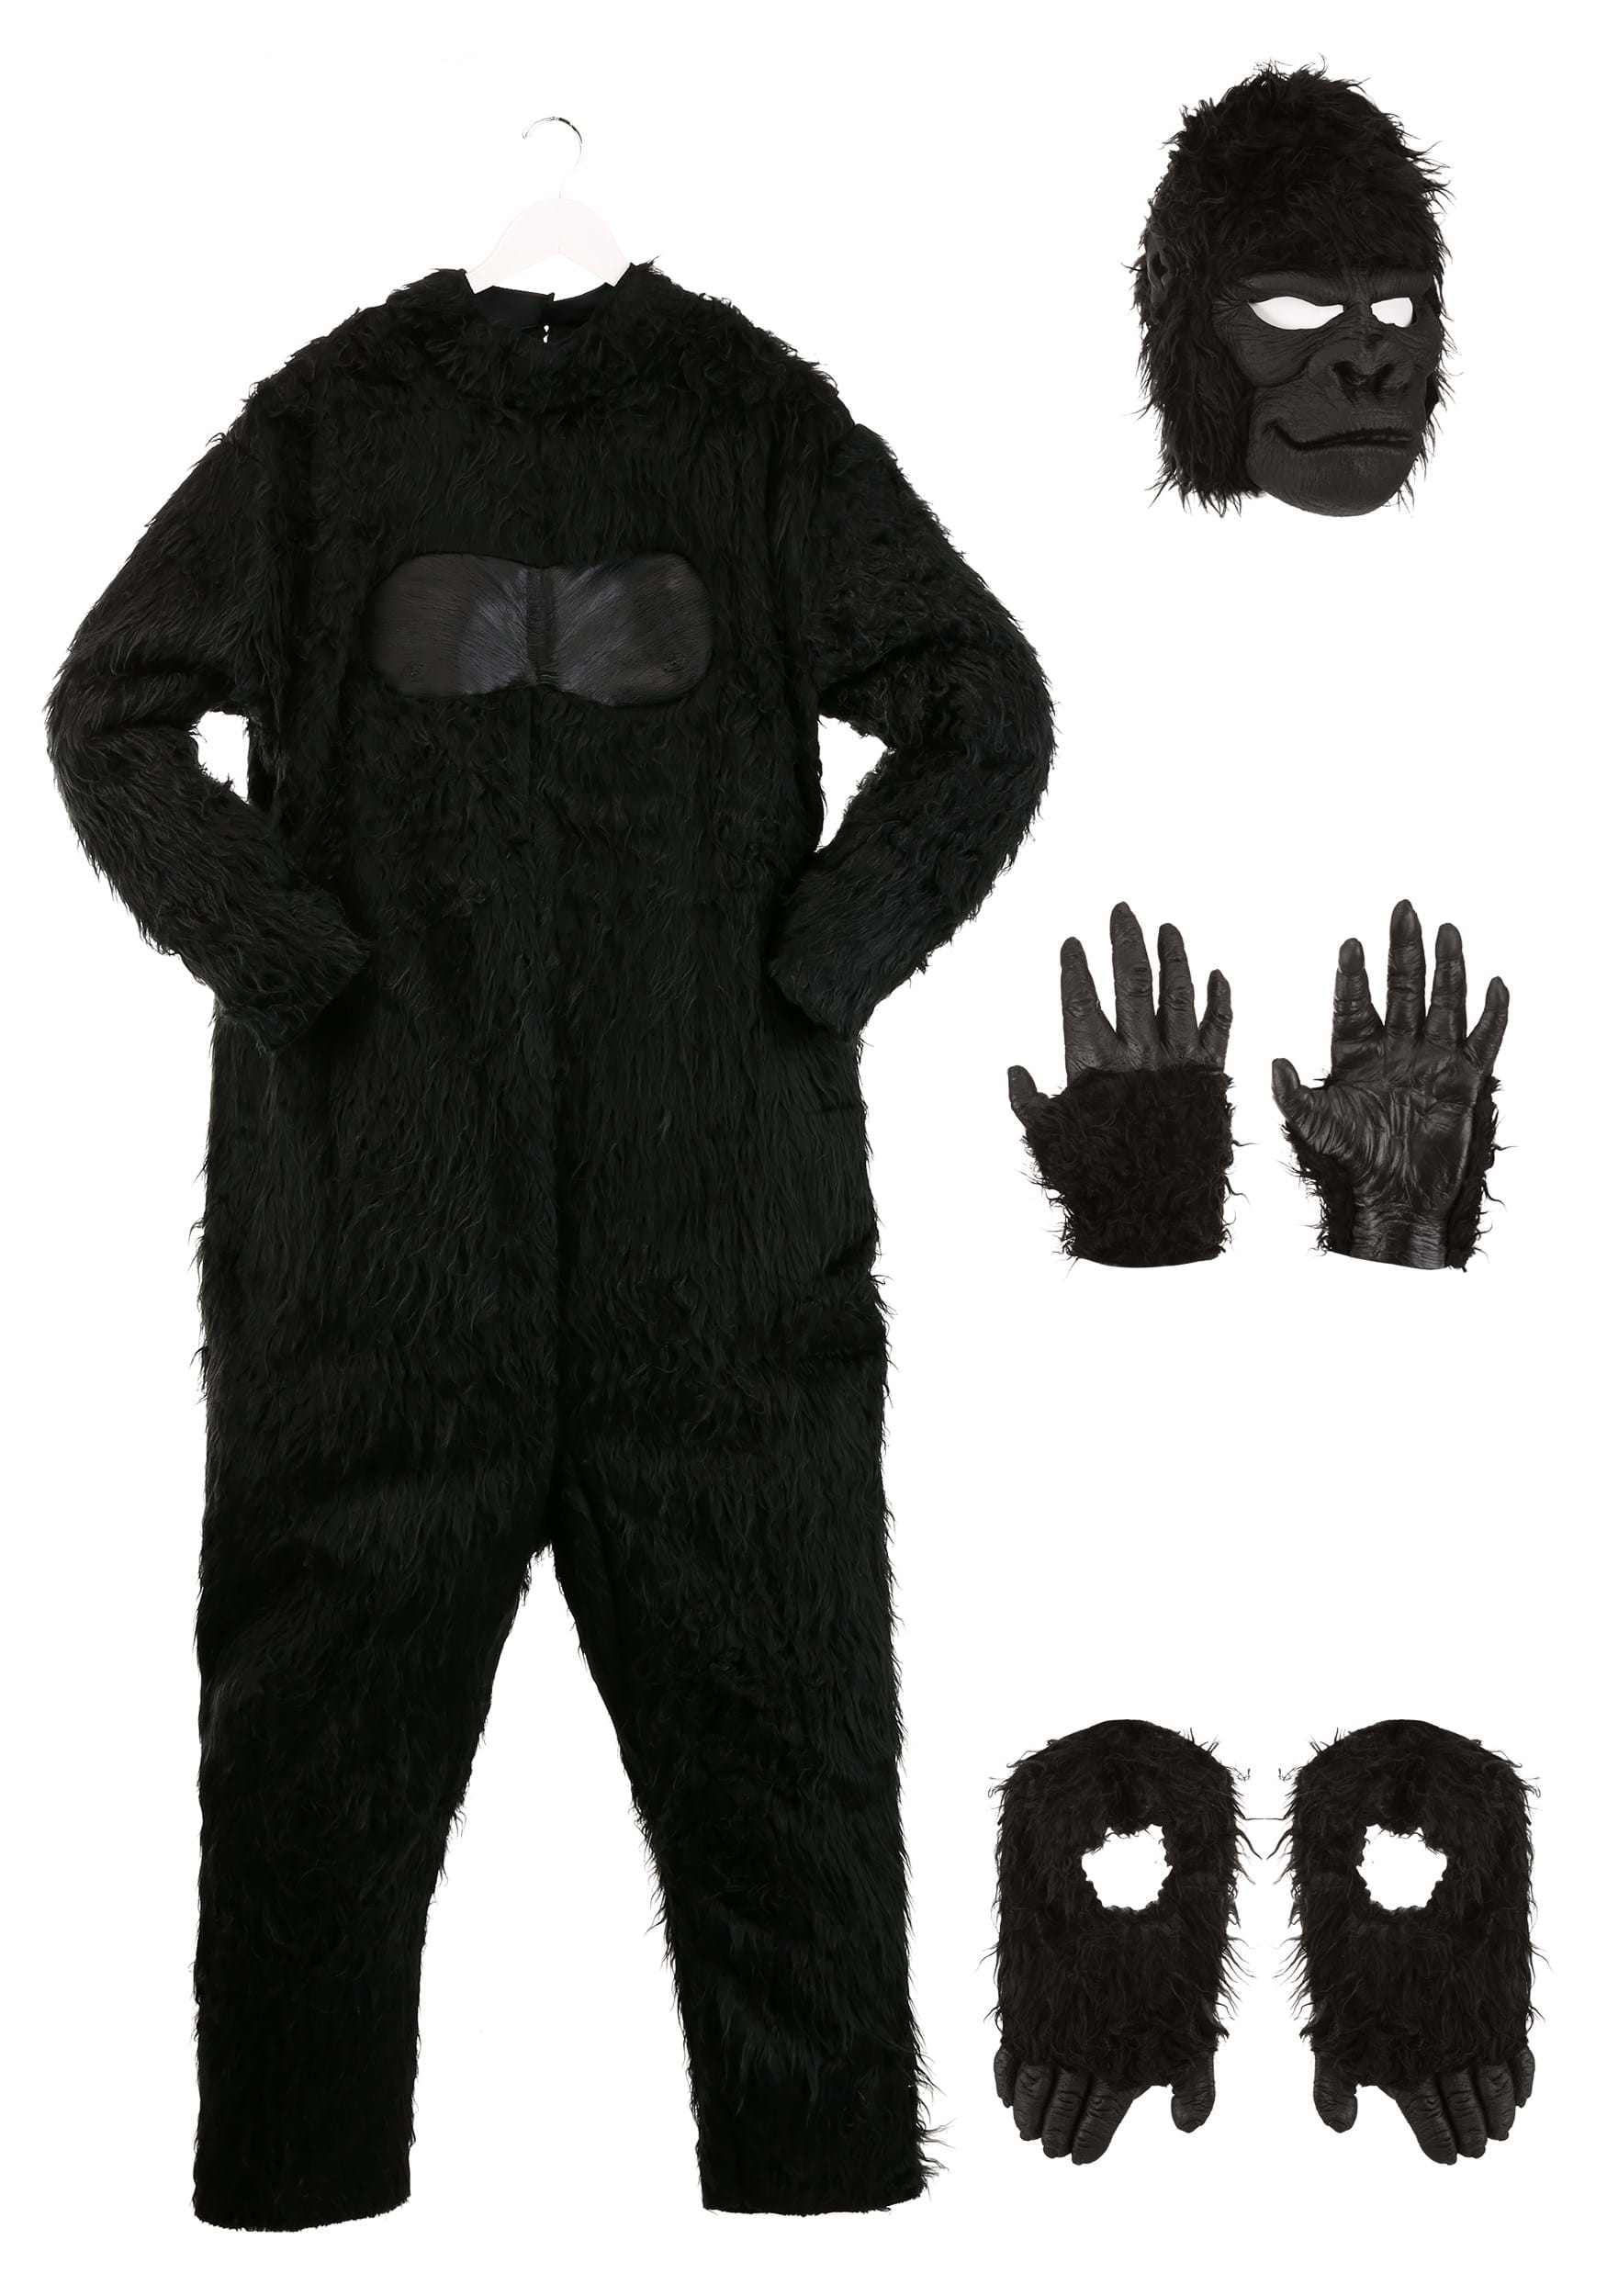 Disfraz de gorila realista adulto Multicolor